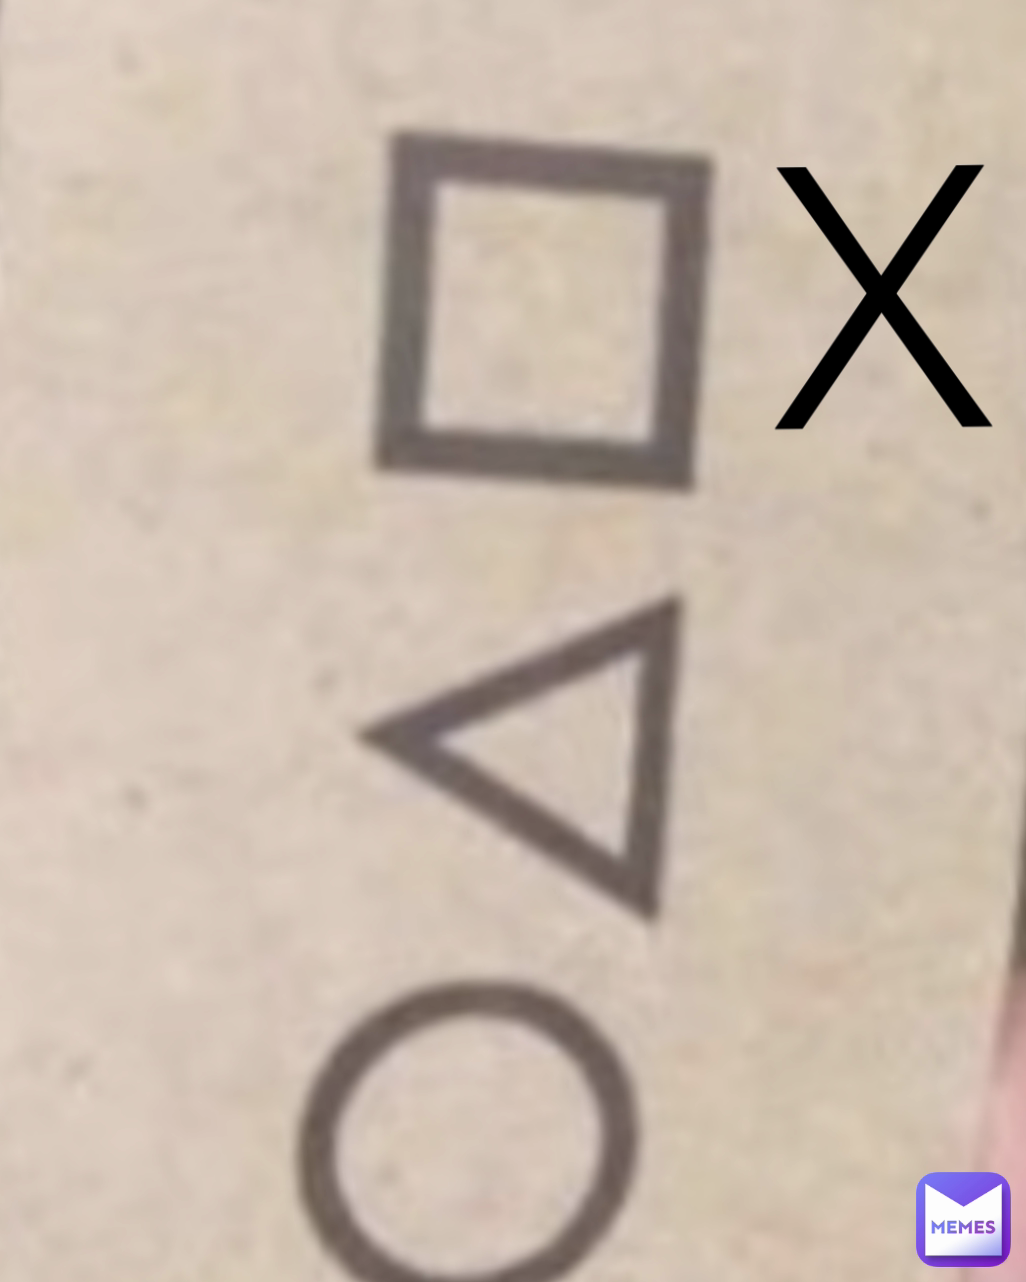 X
